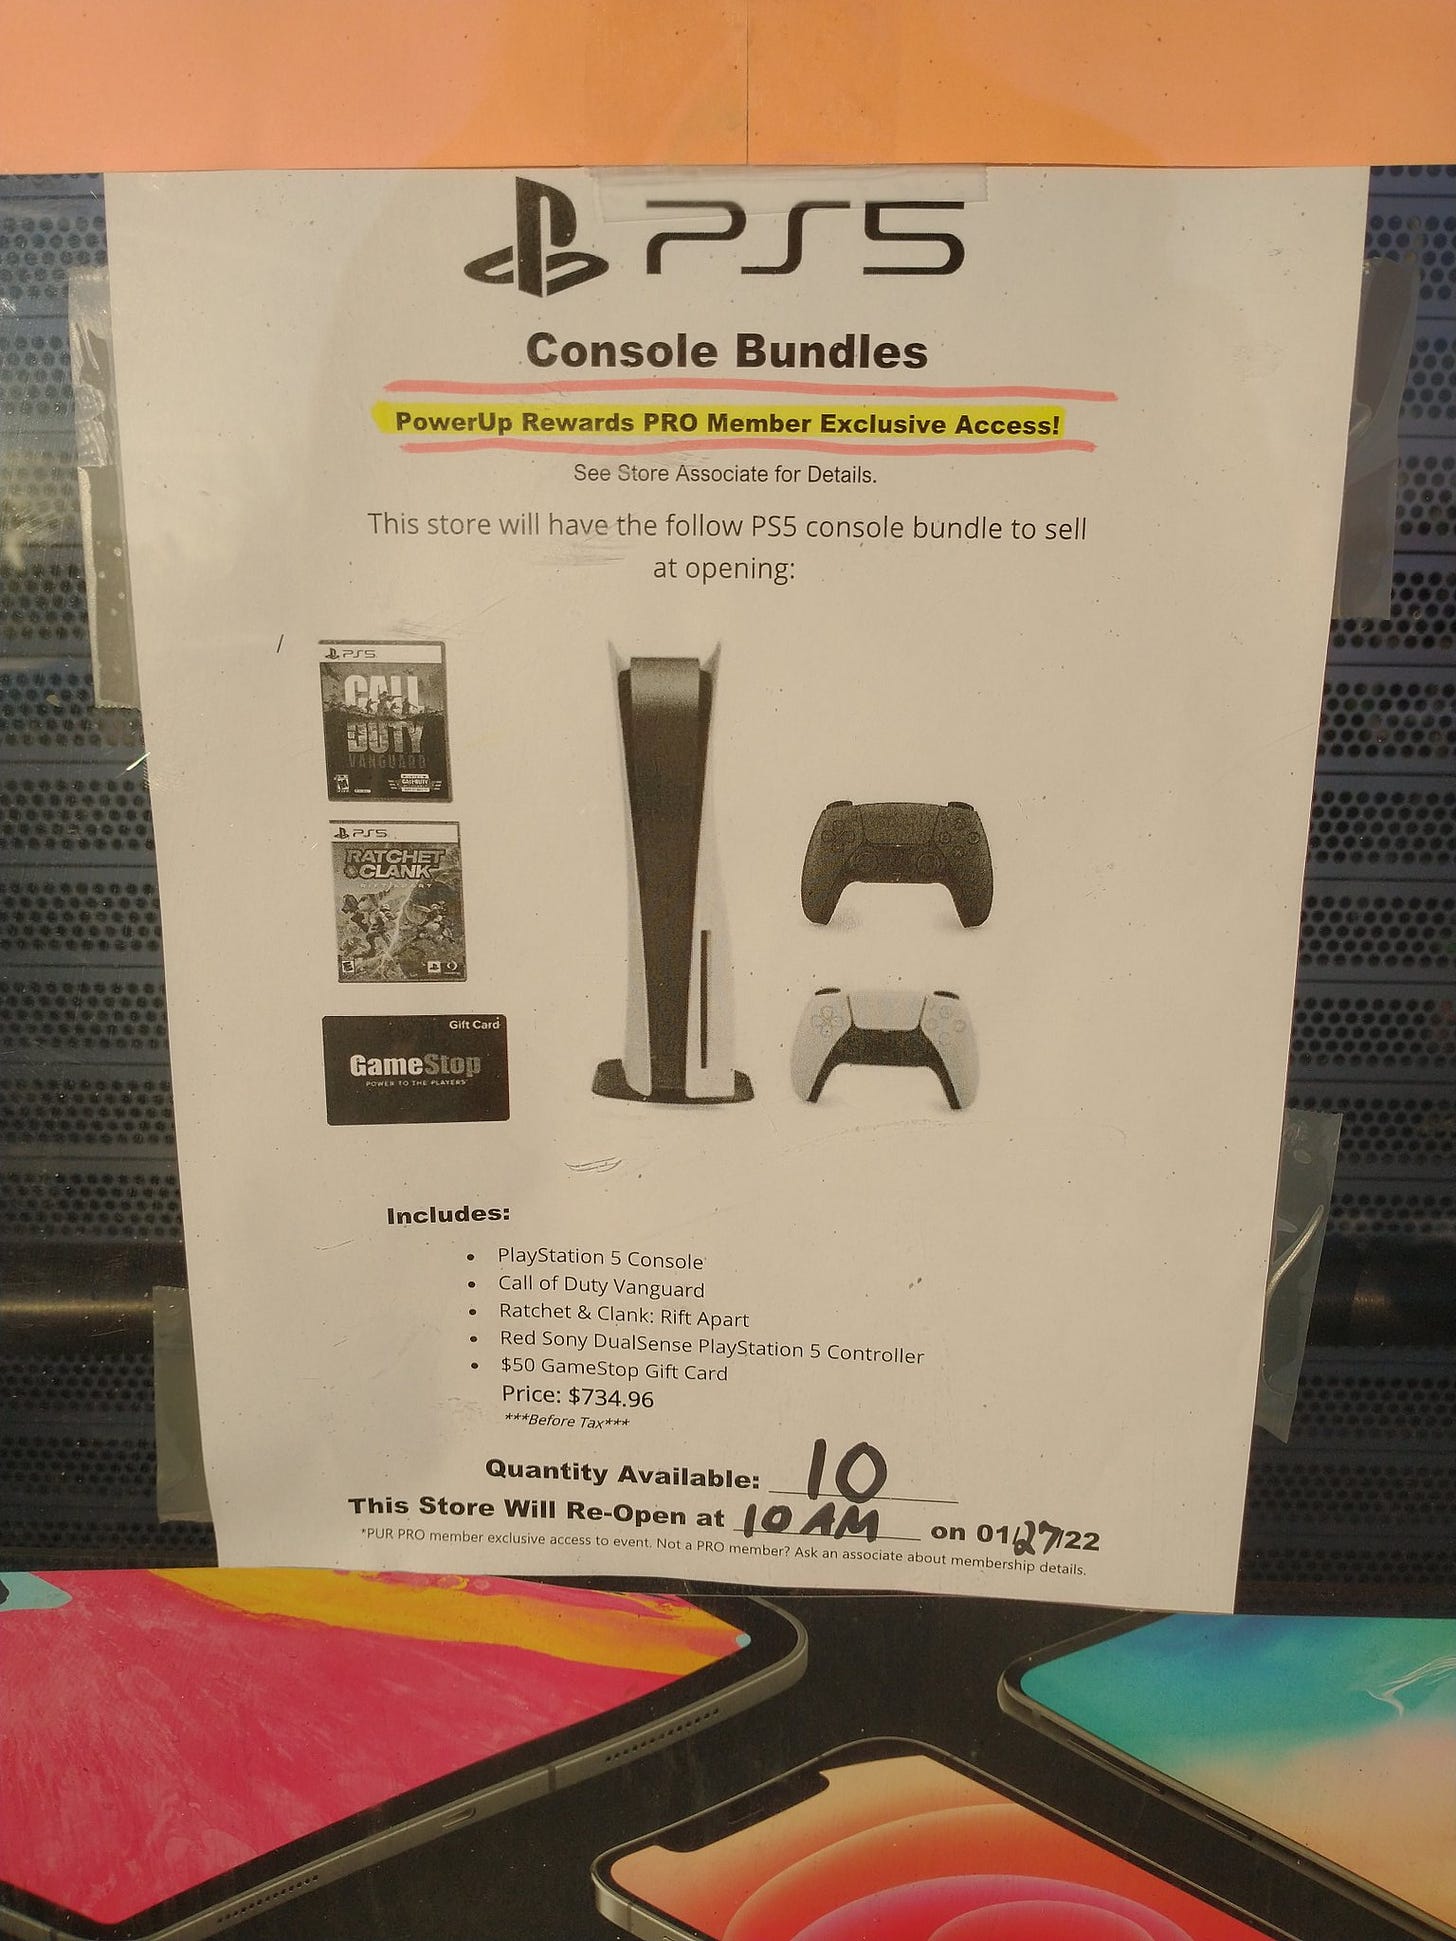 GameStop PS5 restock consoles paper